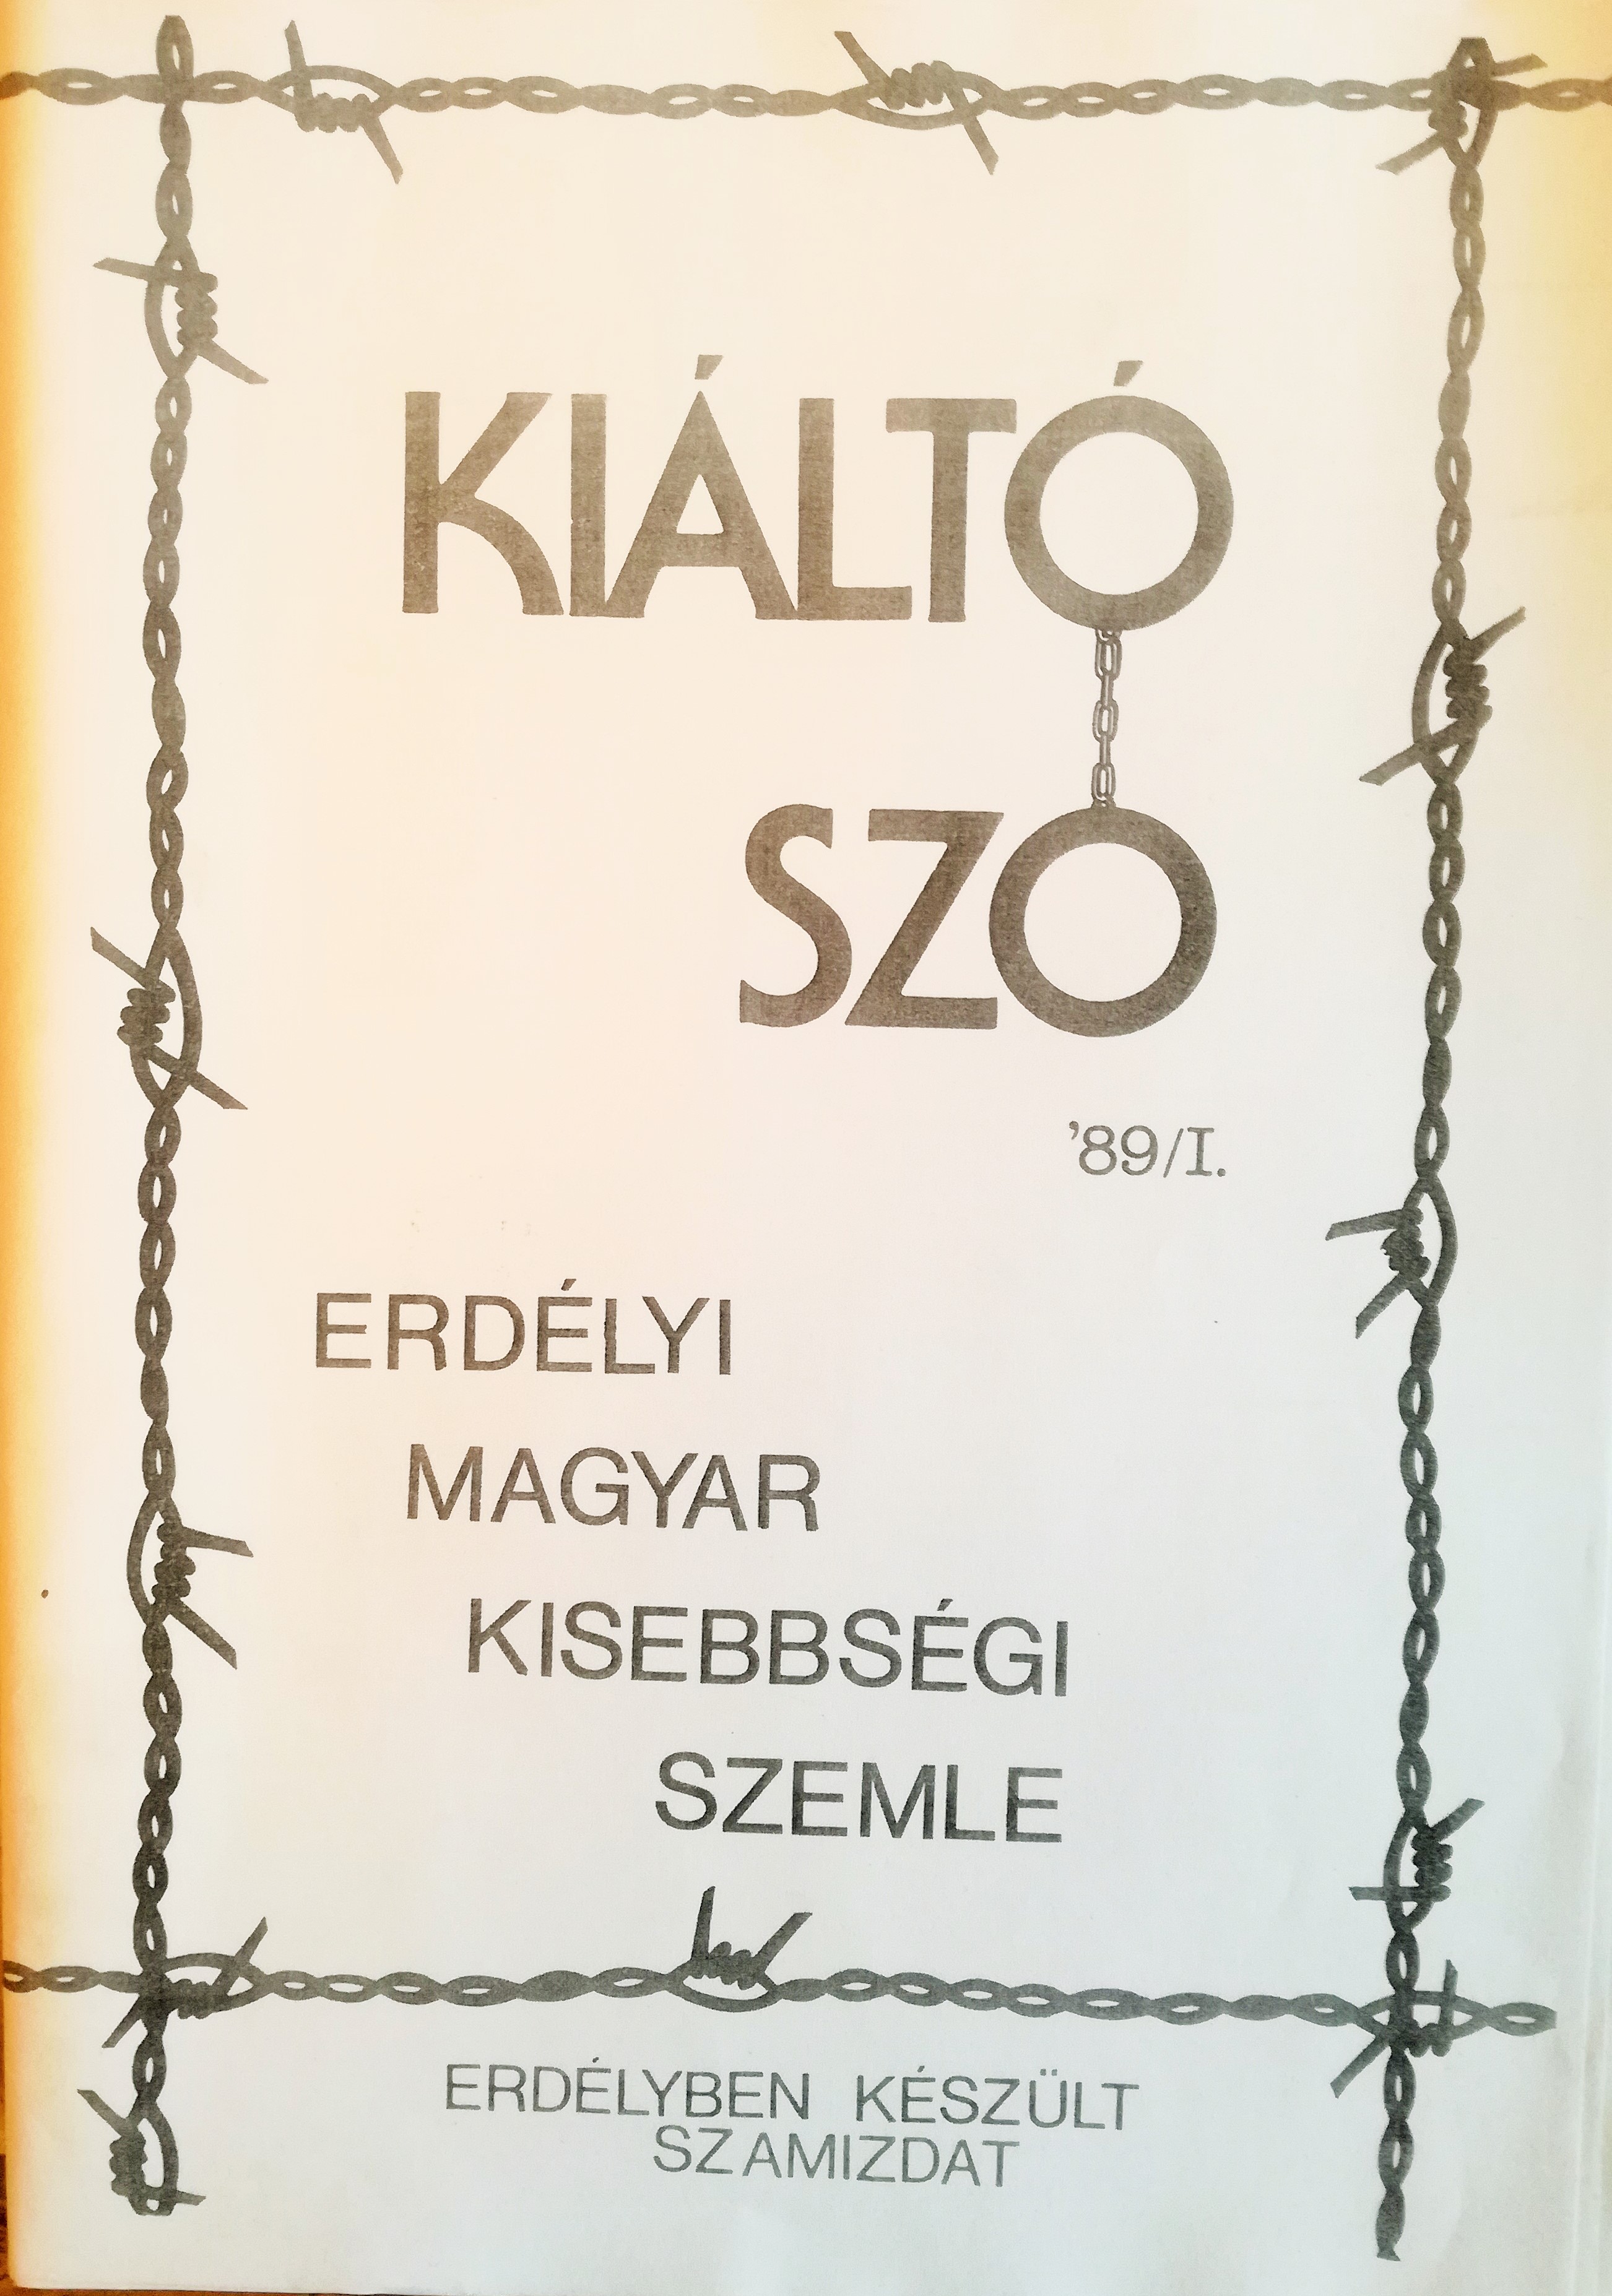 Coperta celui de-al doilea număr din publicaţia samizdat Kiáltó Szó